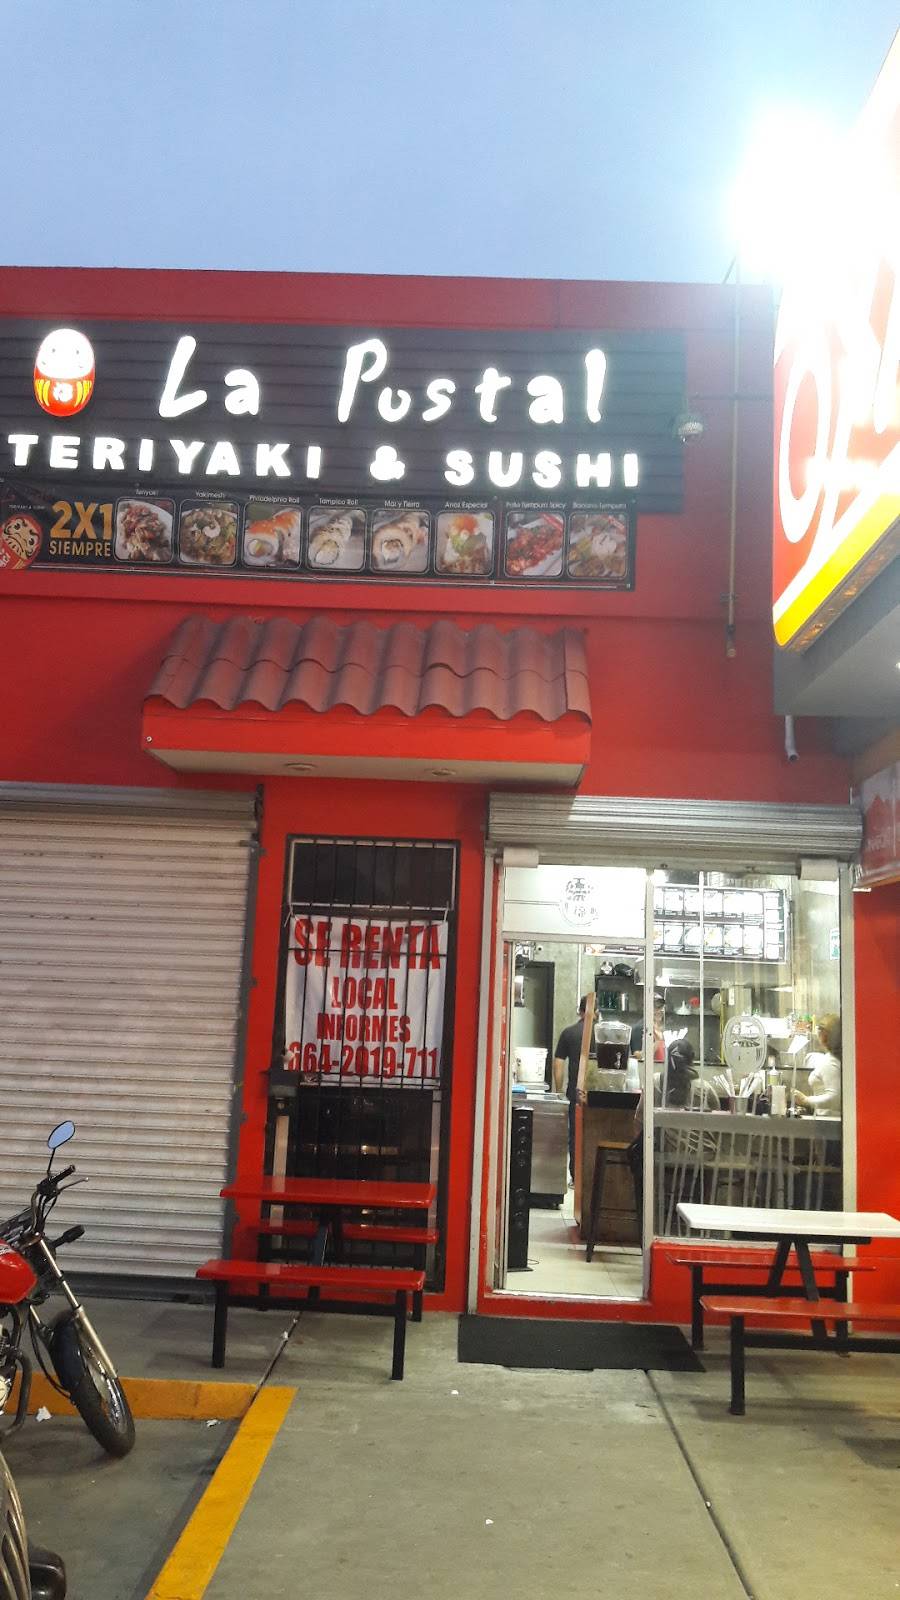 La Postal Teriyaki & Sushi Santa Fe | Santa Fe II, Portico de San Antonio, B.C., Mexico | Phone: 664 210 7091